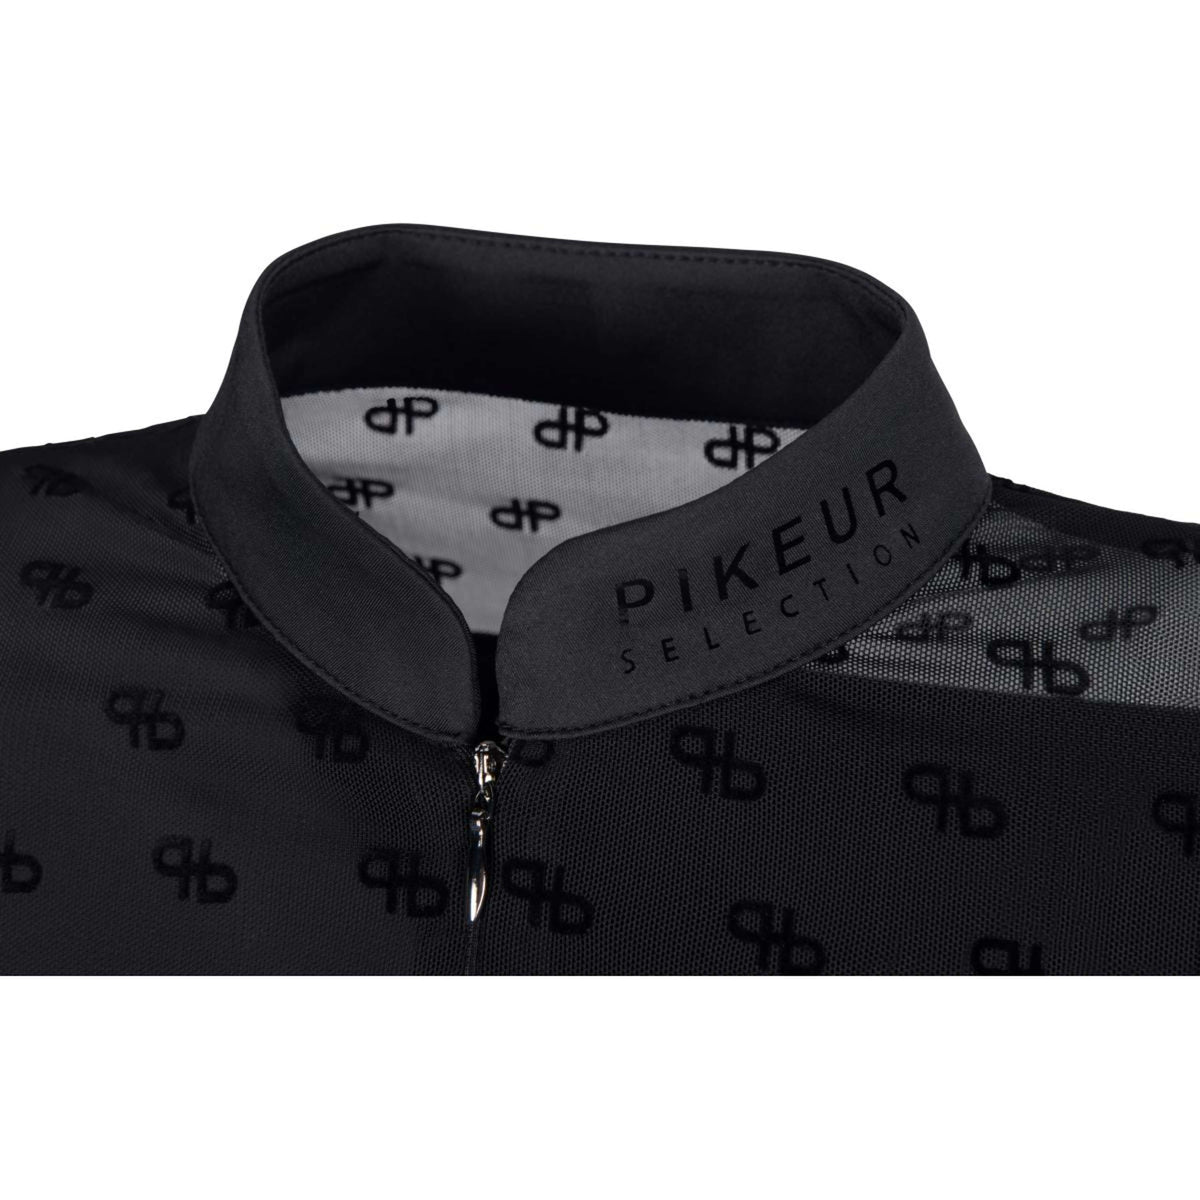 Pikeur Shirt Selection Mesh mit Reißverschluss Schwarz